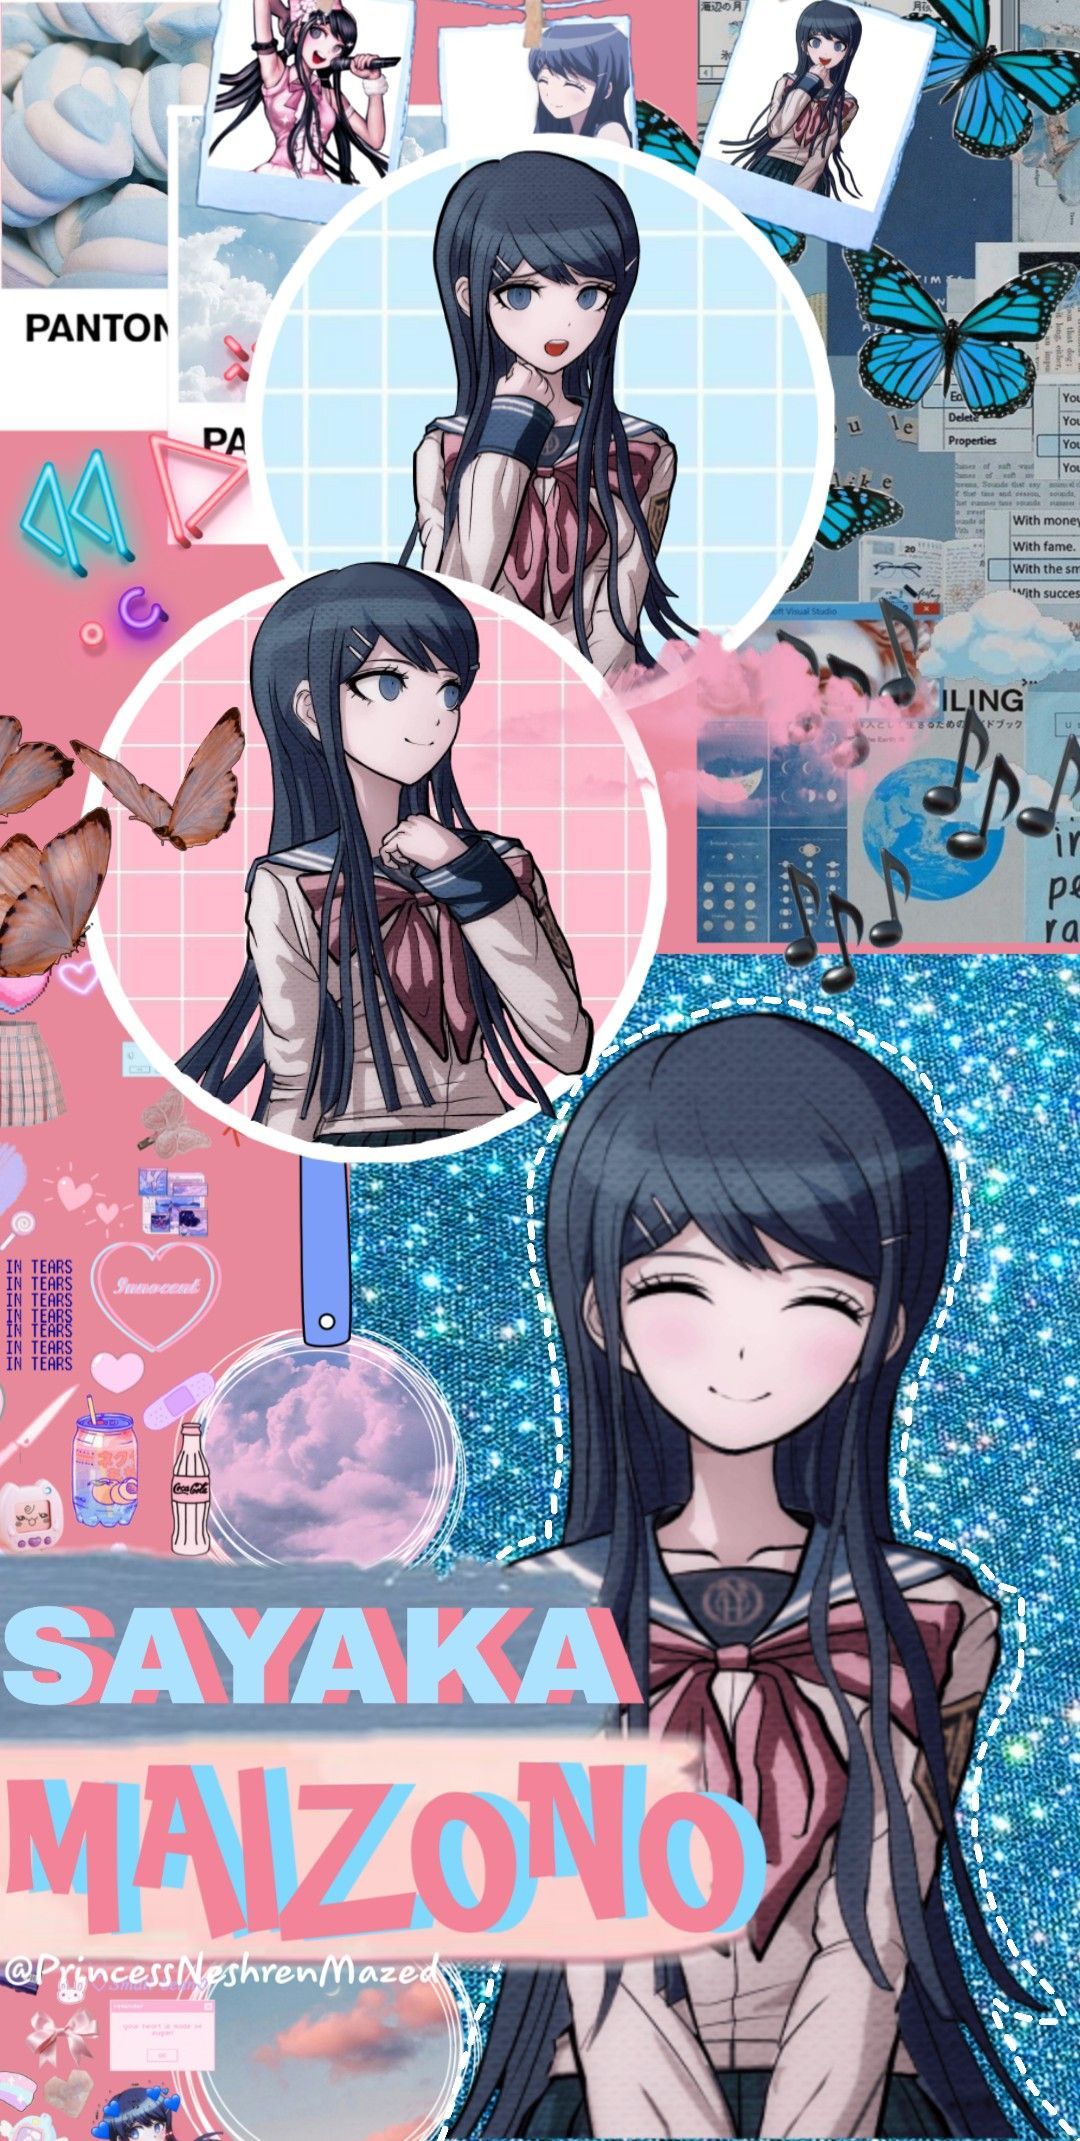 Sayaka Maizono wallpaper. Danganronpa, Cute anime wallpaper, Danganronpa characters